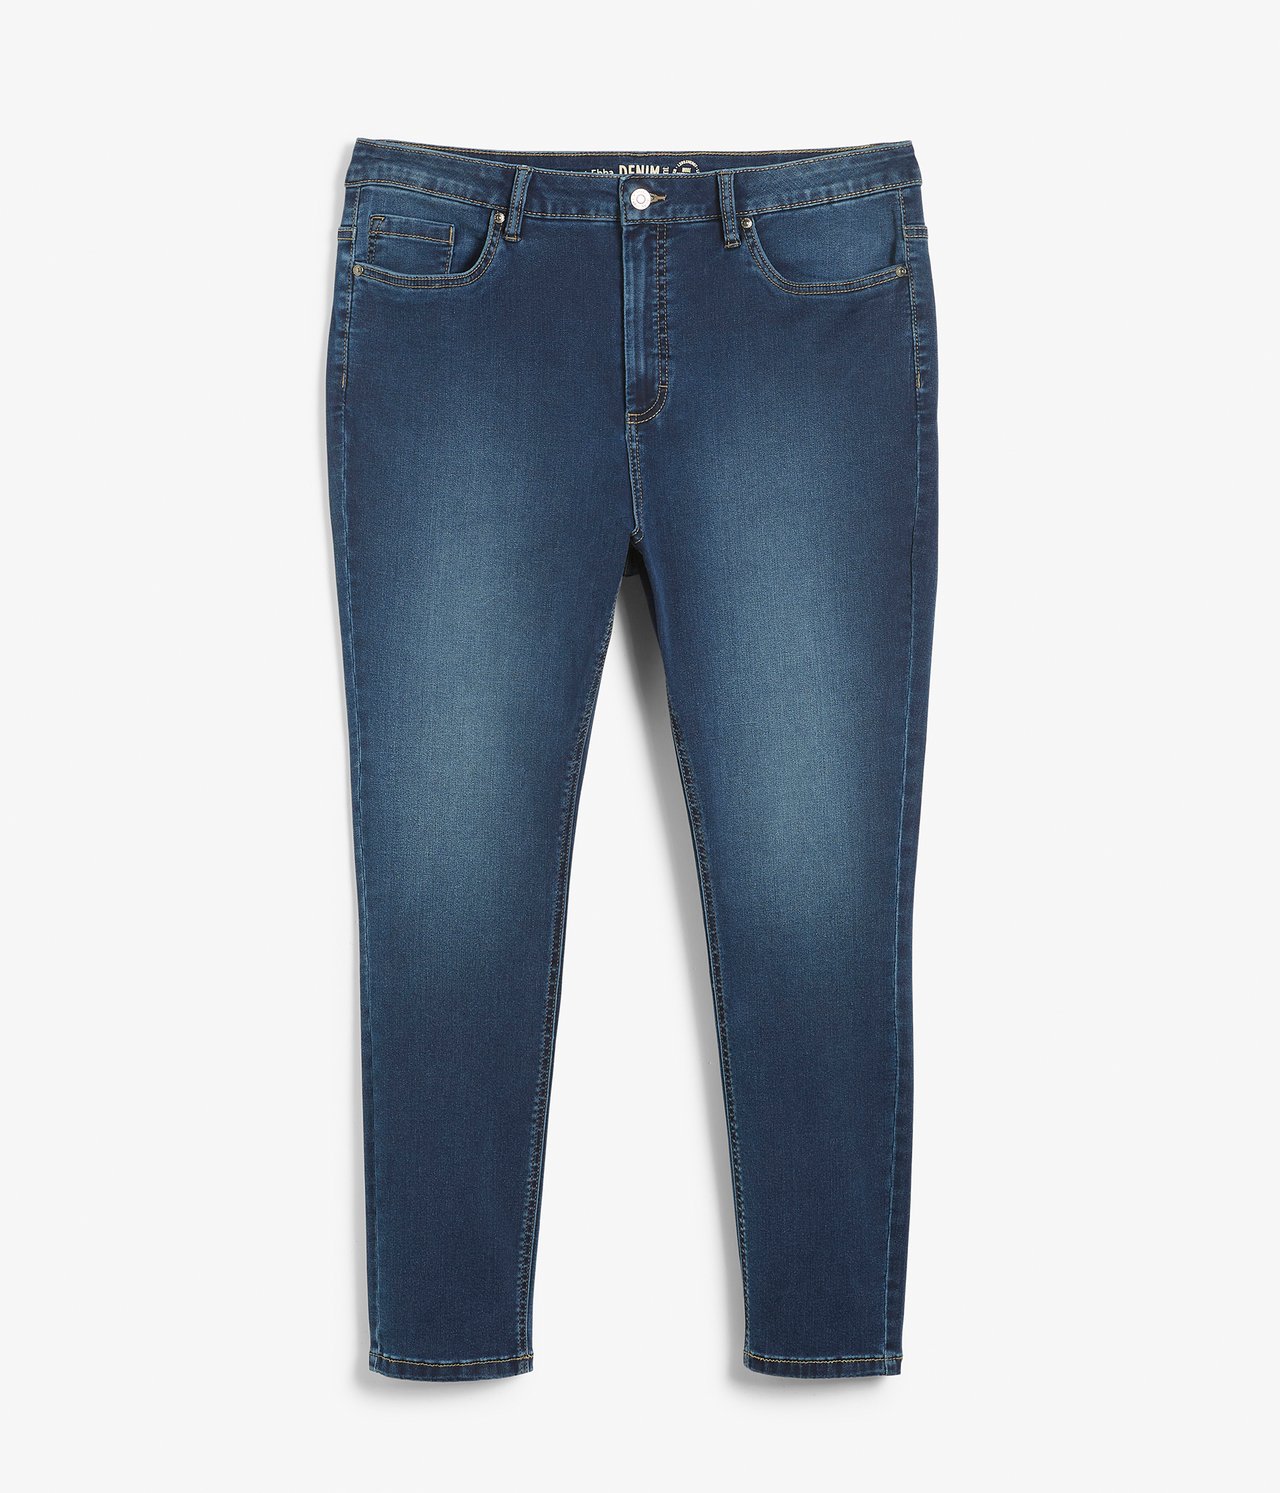 Ebba slim jeans short leg - Mørk denim - 6